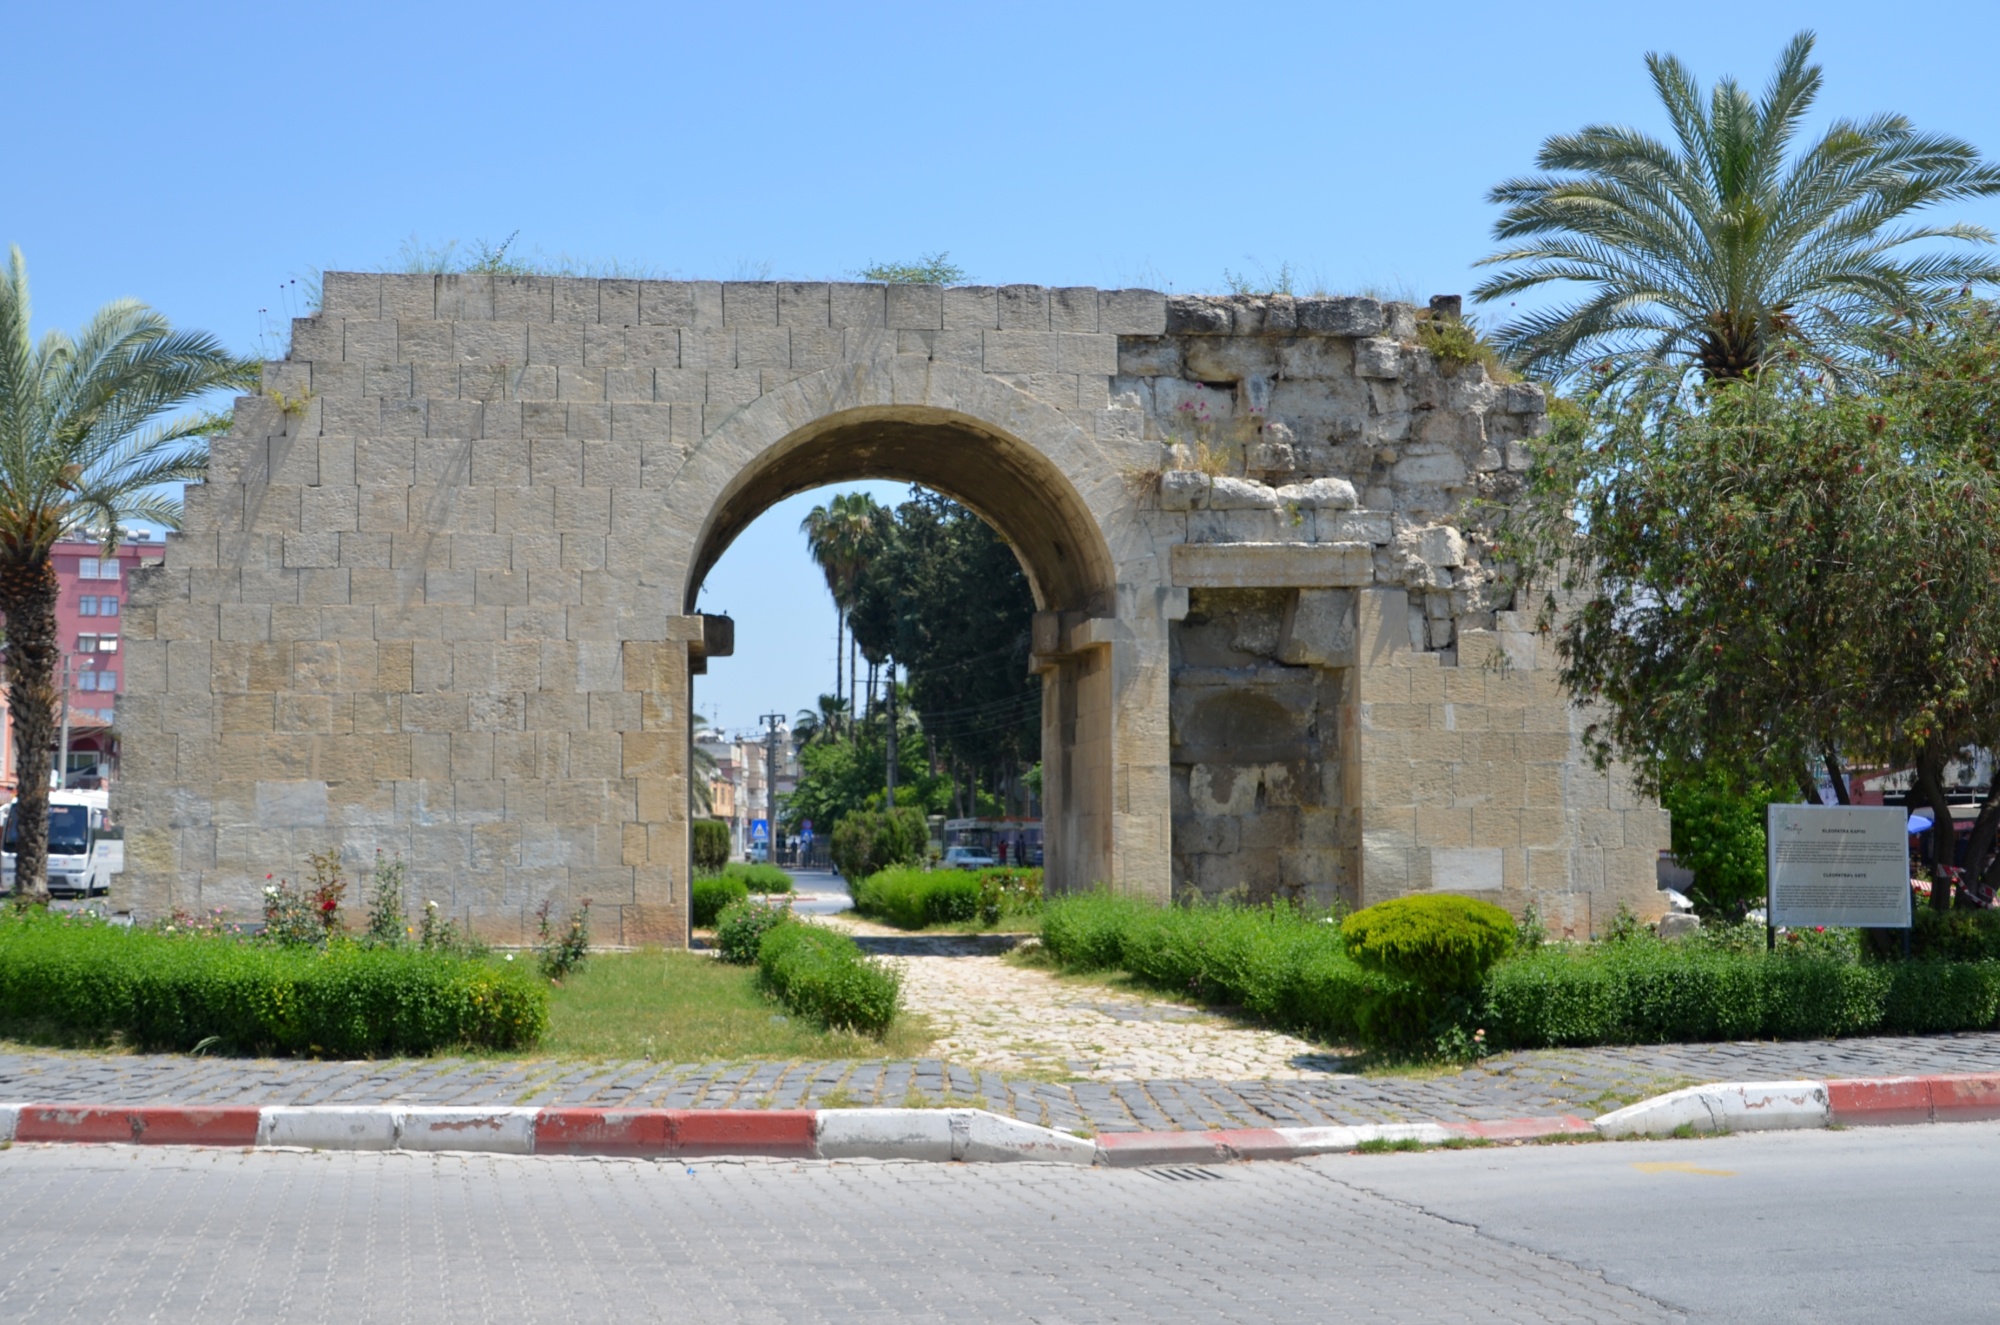 Cleopatra's Gate(Kleopatra Kapisi)